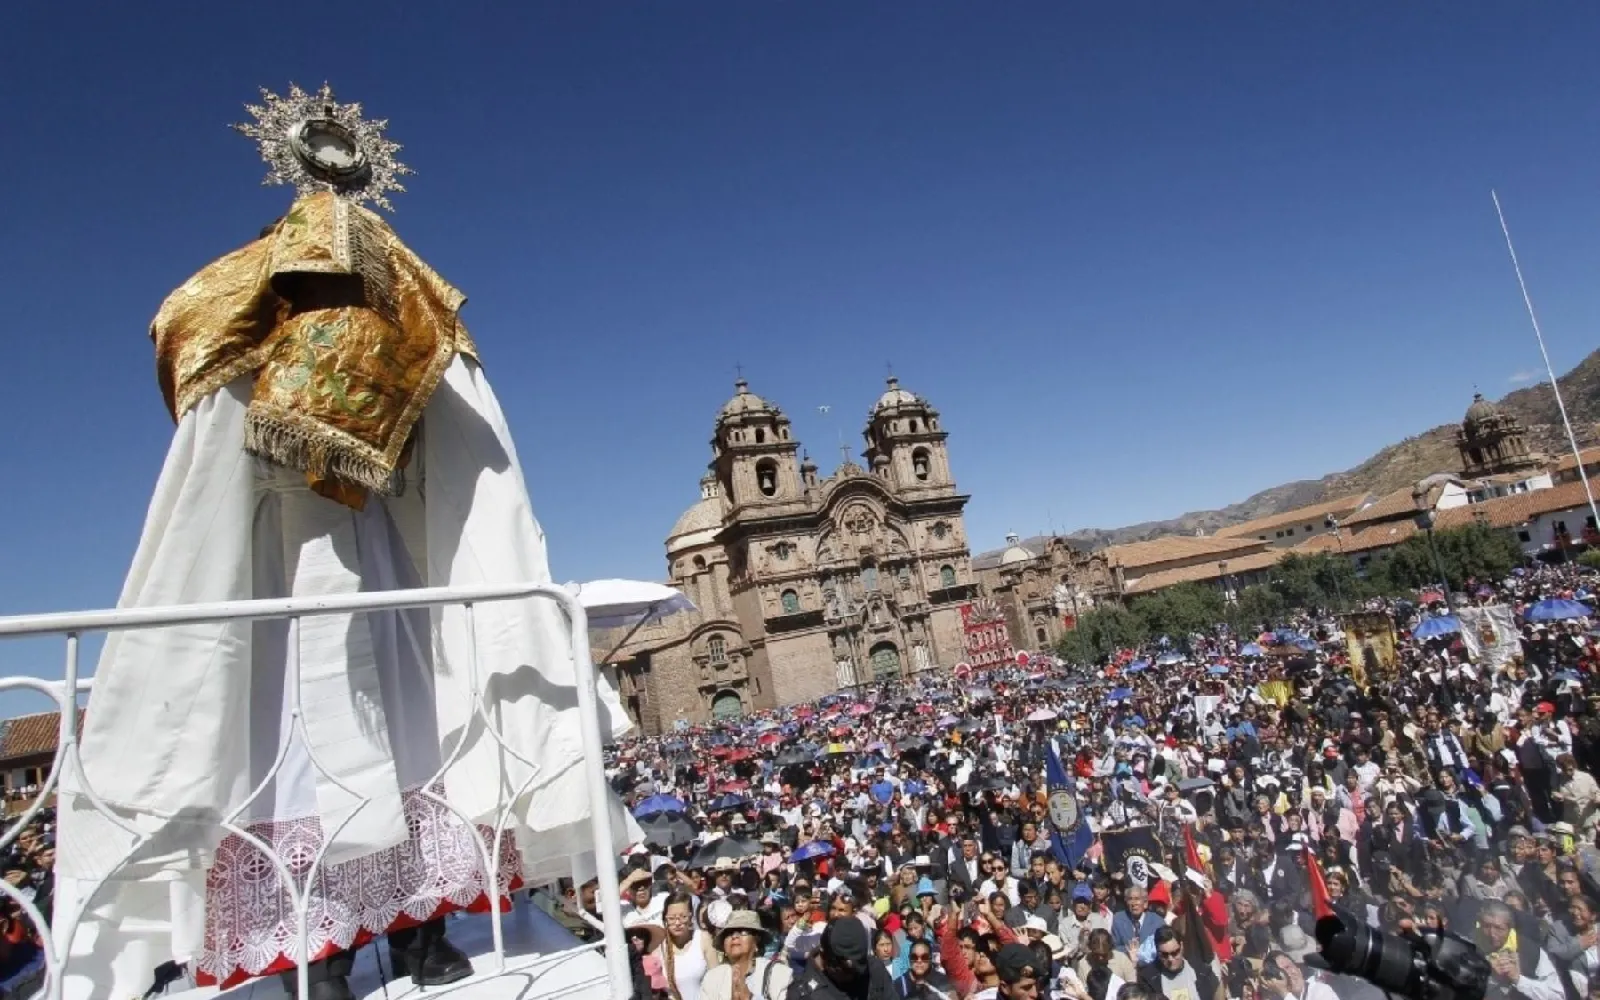 Declarada Patrimonio Cultural de la Nación en 2004, la festividad del Corpus Christi es una de las festividades más emblemáticas del Cusco y del Perú.?w=200&h=150